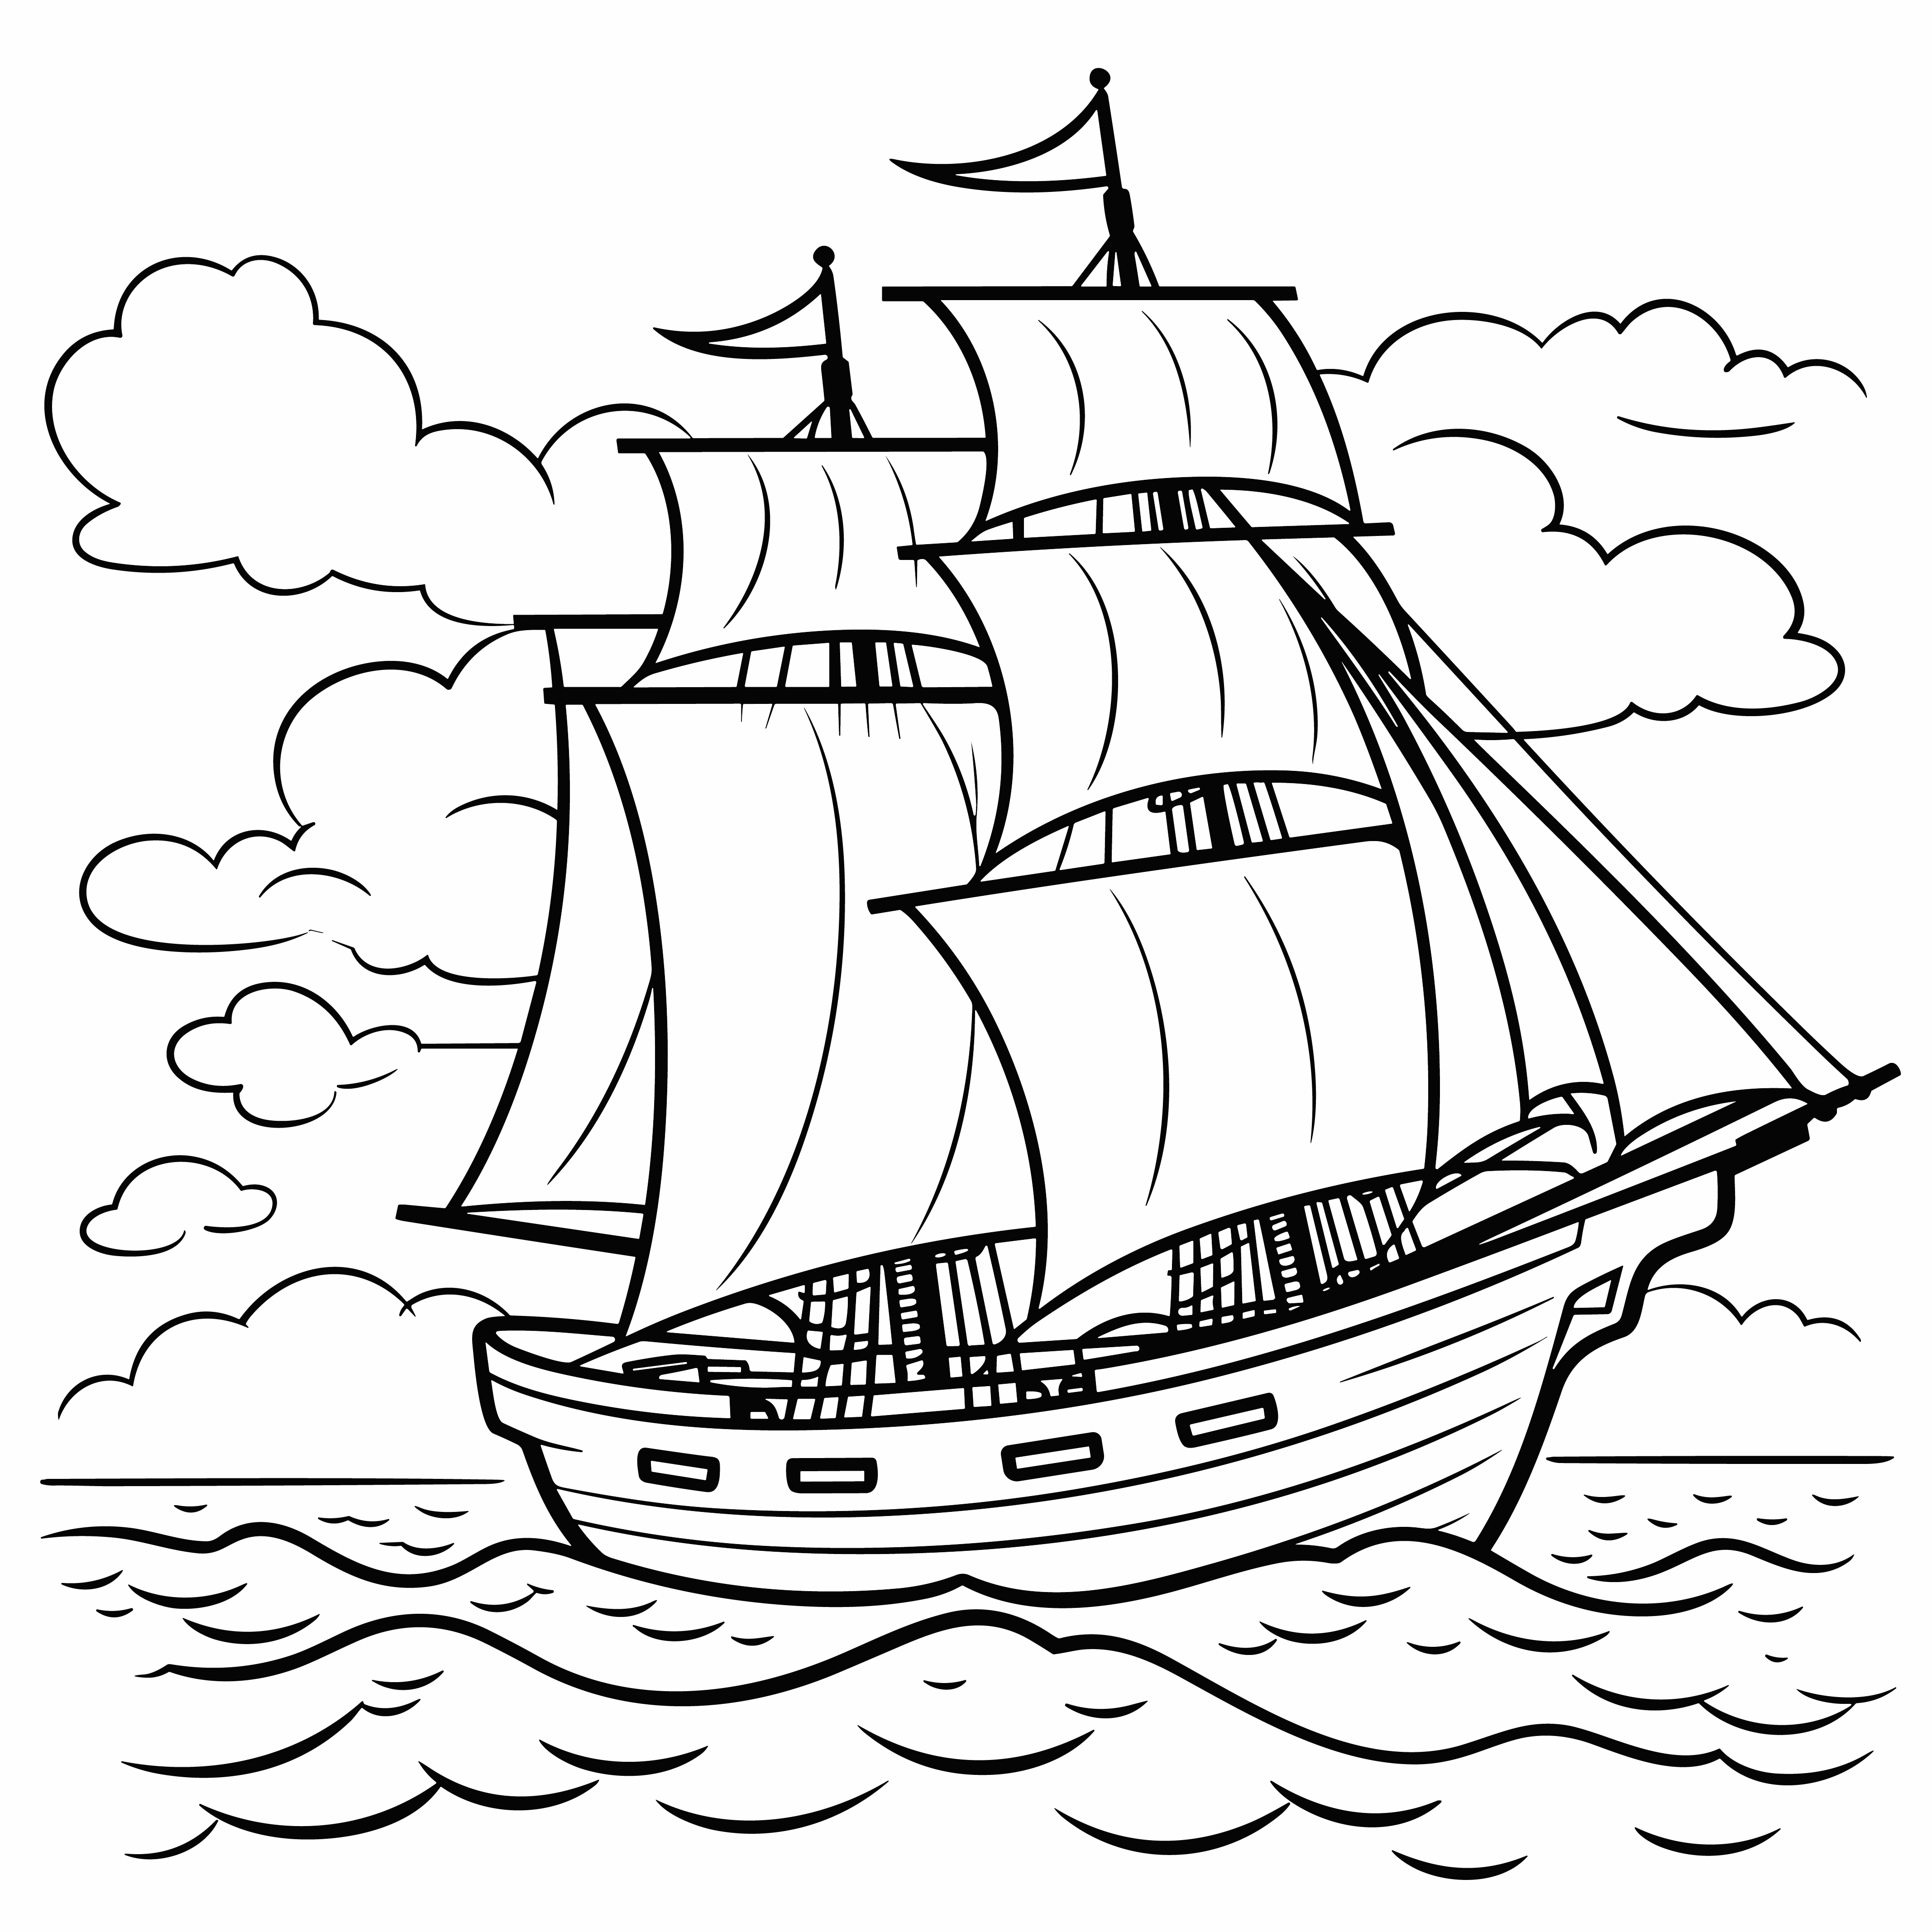 Раскраска корабль с развивающимися на ветру парусами формата А4 в высоком качестве